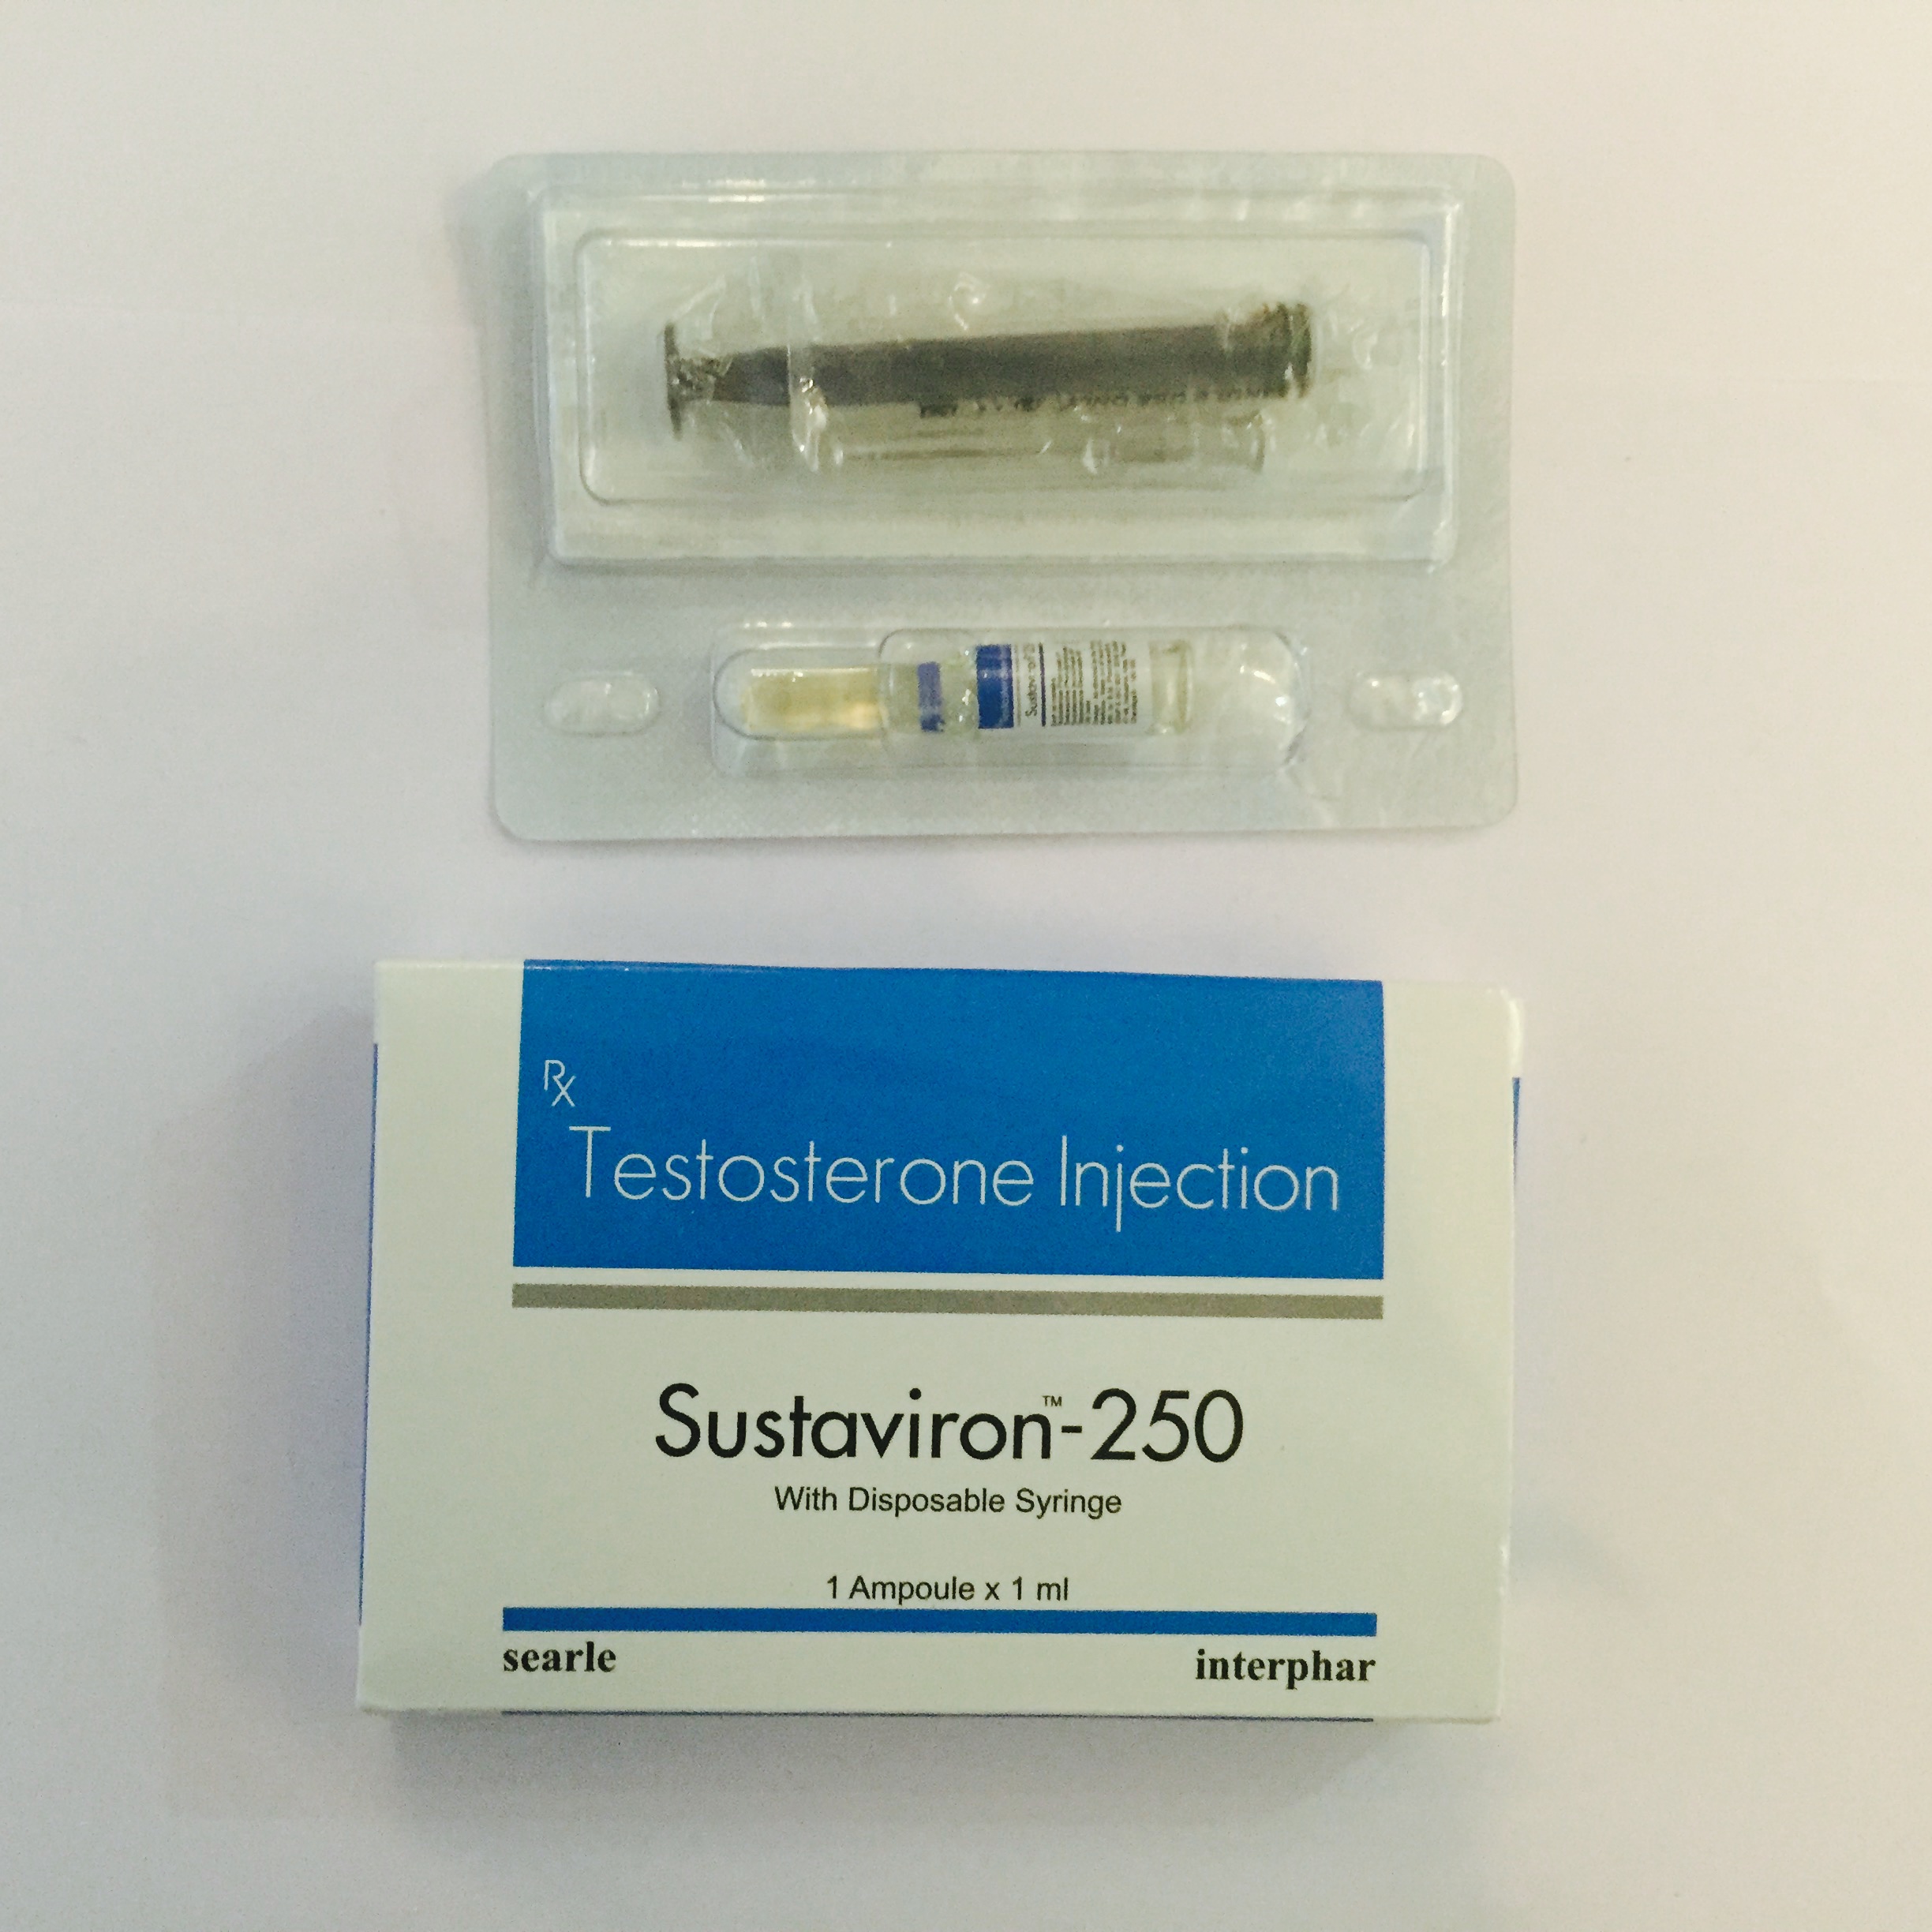 Sustaviron-250 (testosterone mix)